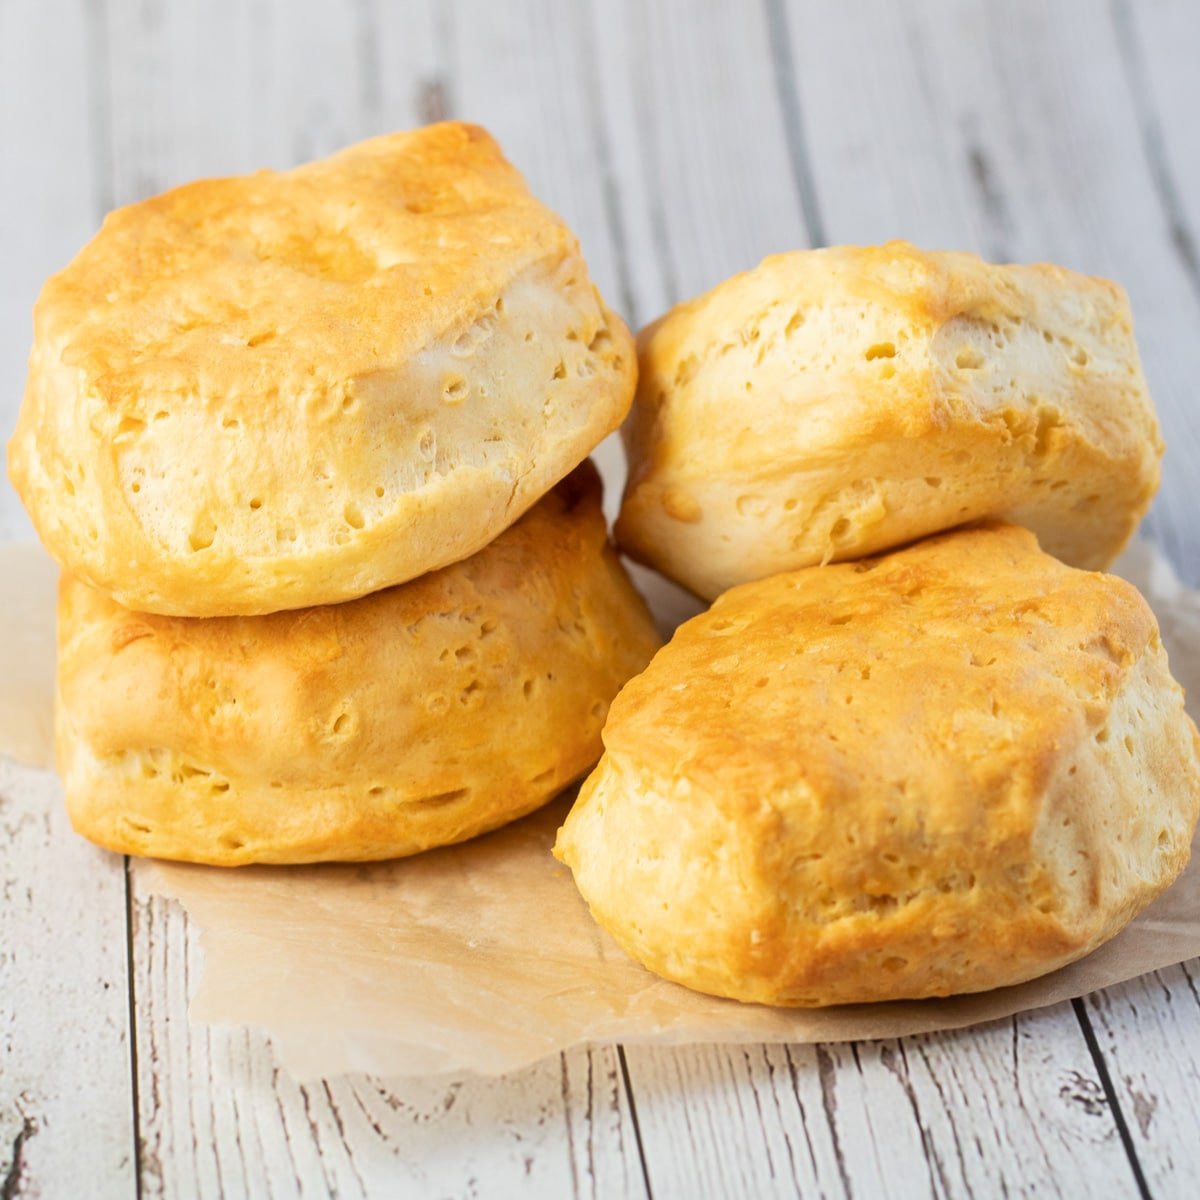 Biscuits pour friteuse à air cuits jusqu'à ce qu'ils soient dorés et empilés sur du papier parchemin.